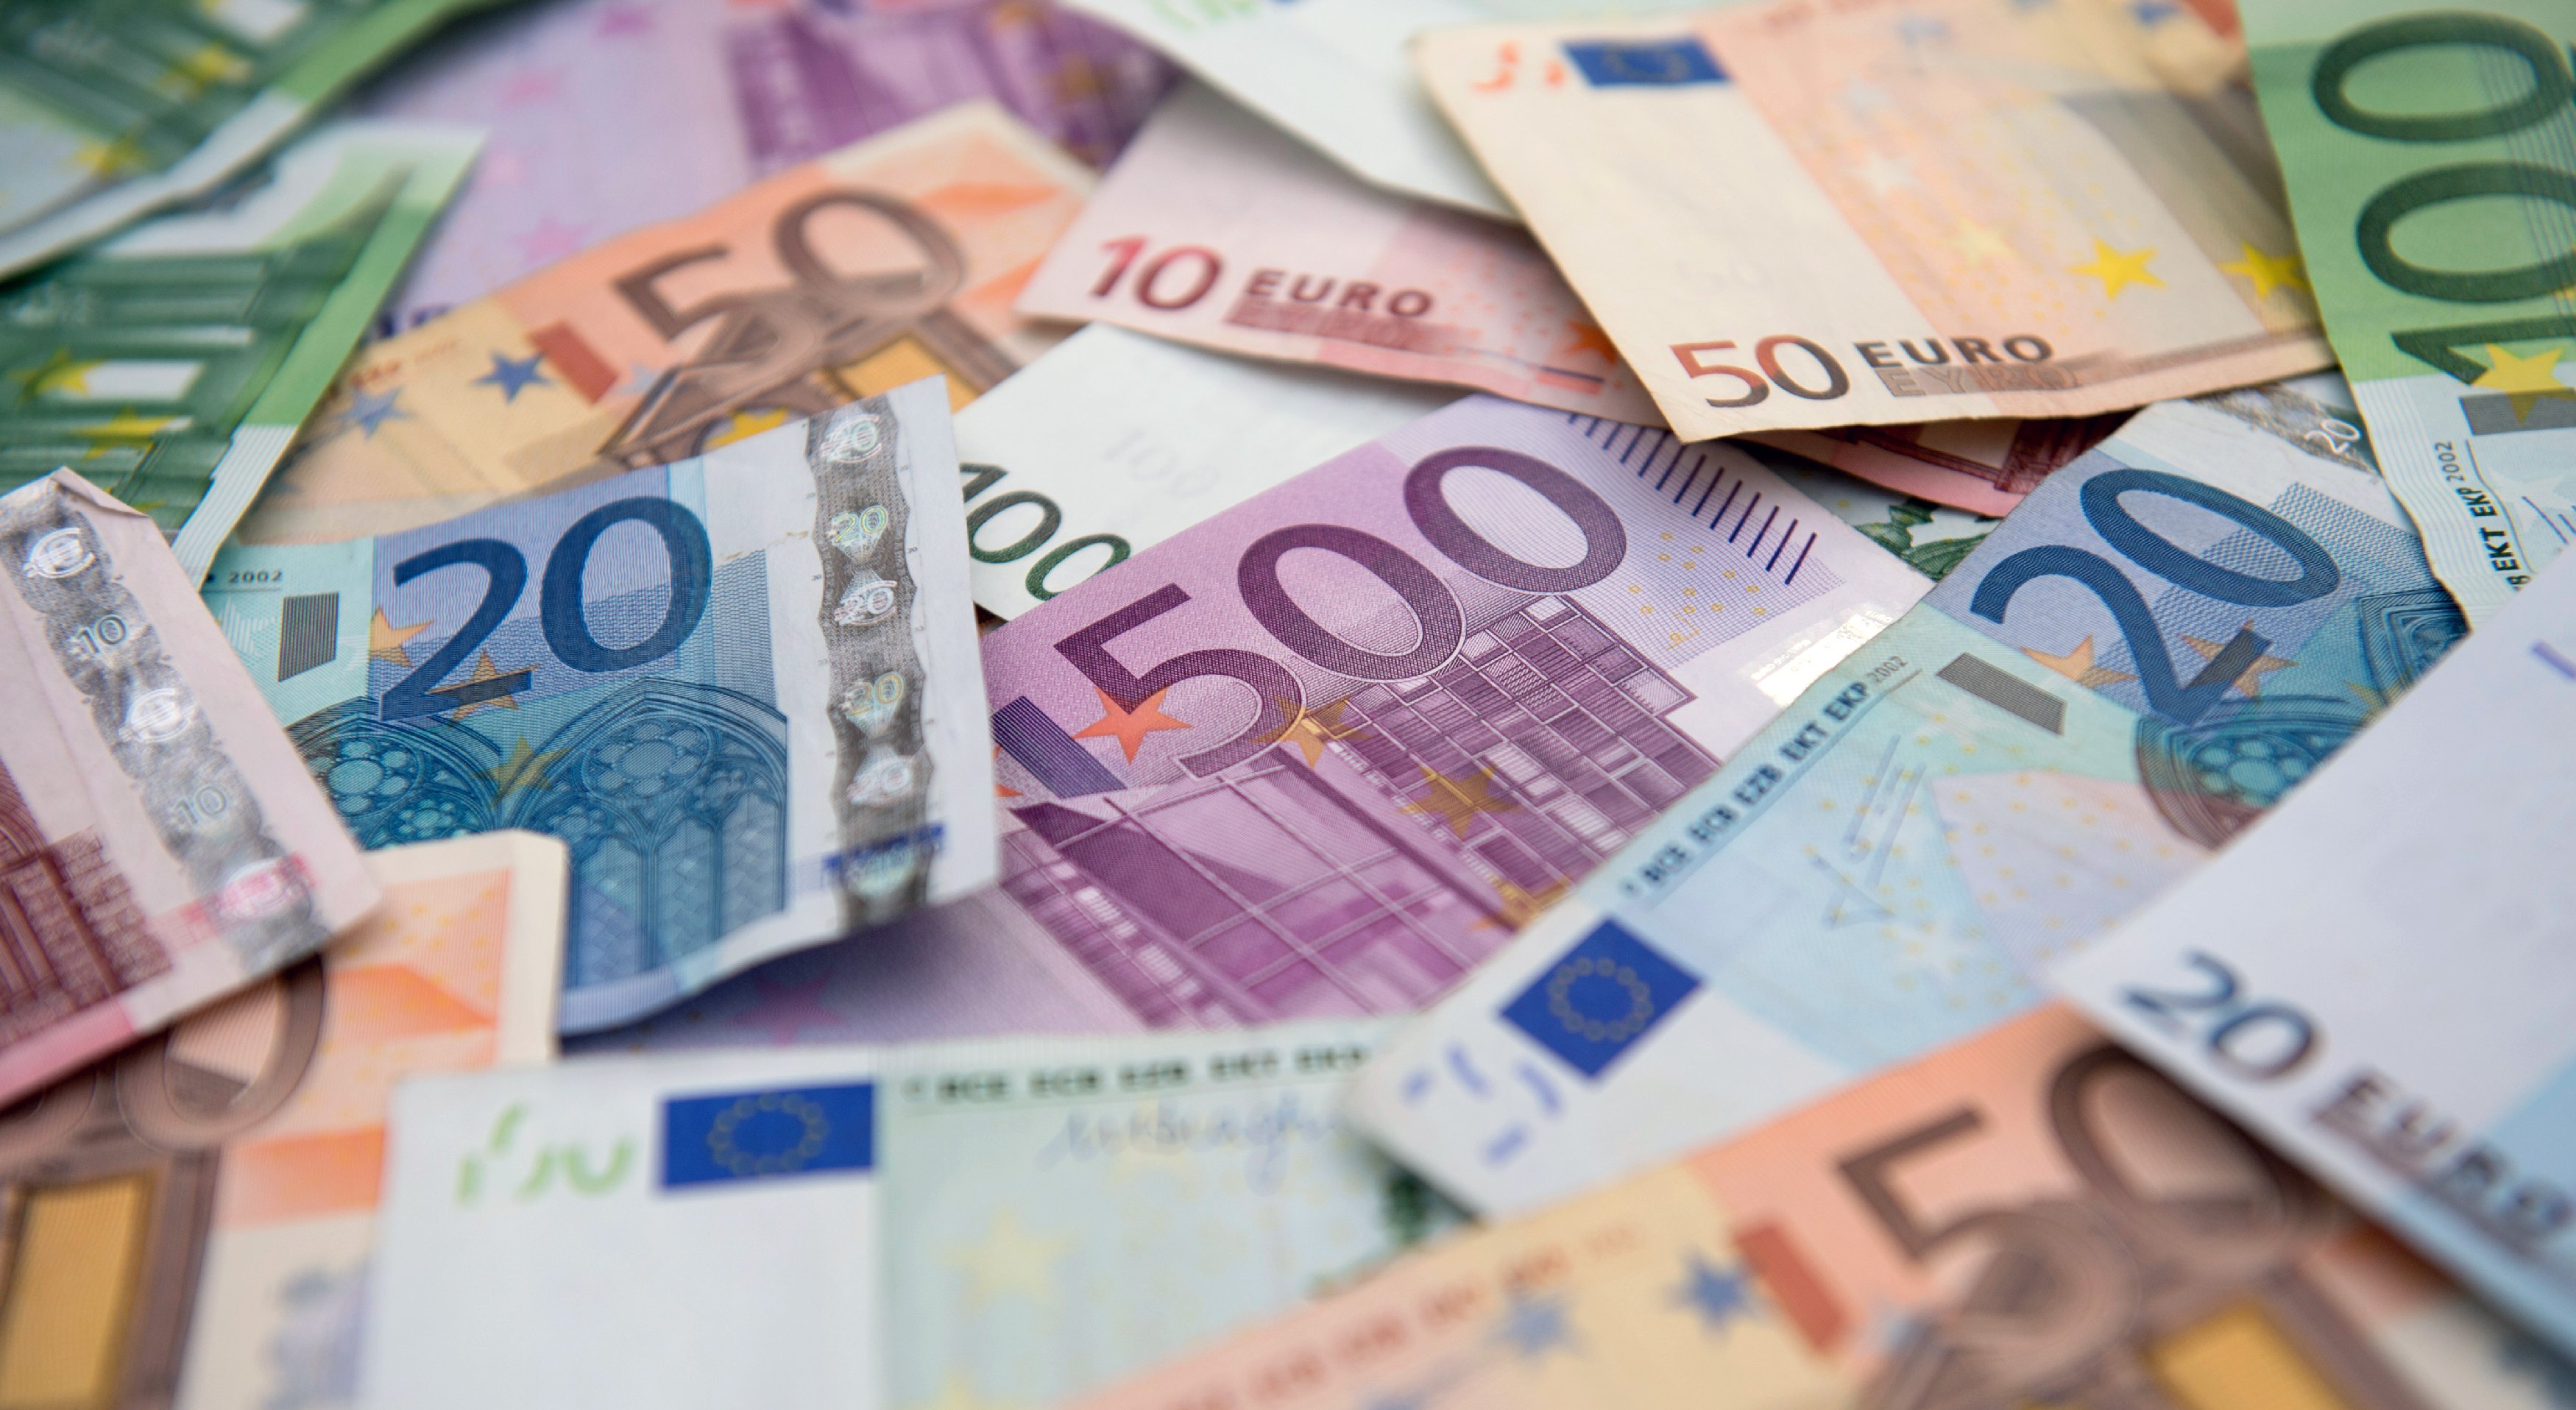 Euro, aradan 15 yıl geçmesine rağmen imajını düzeltemedi